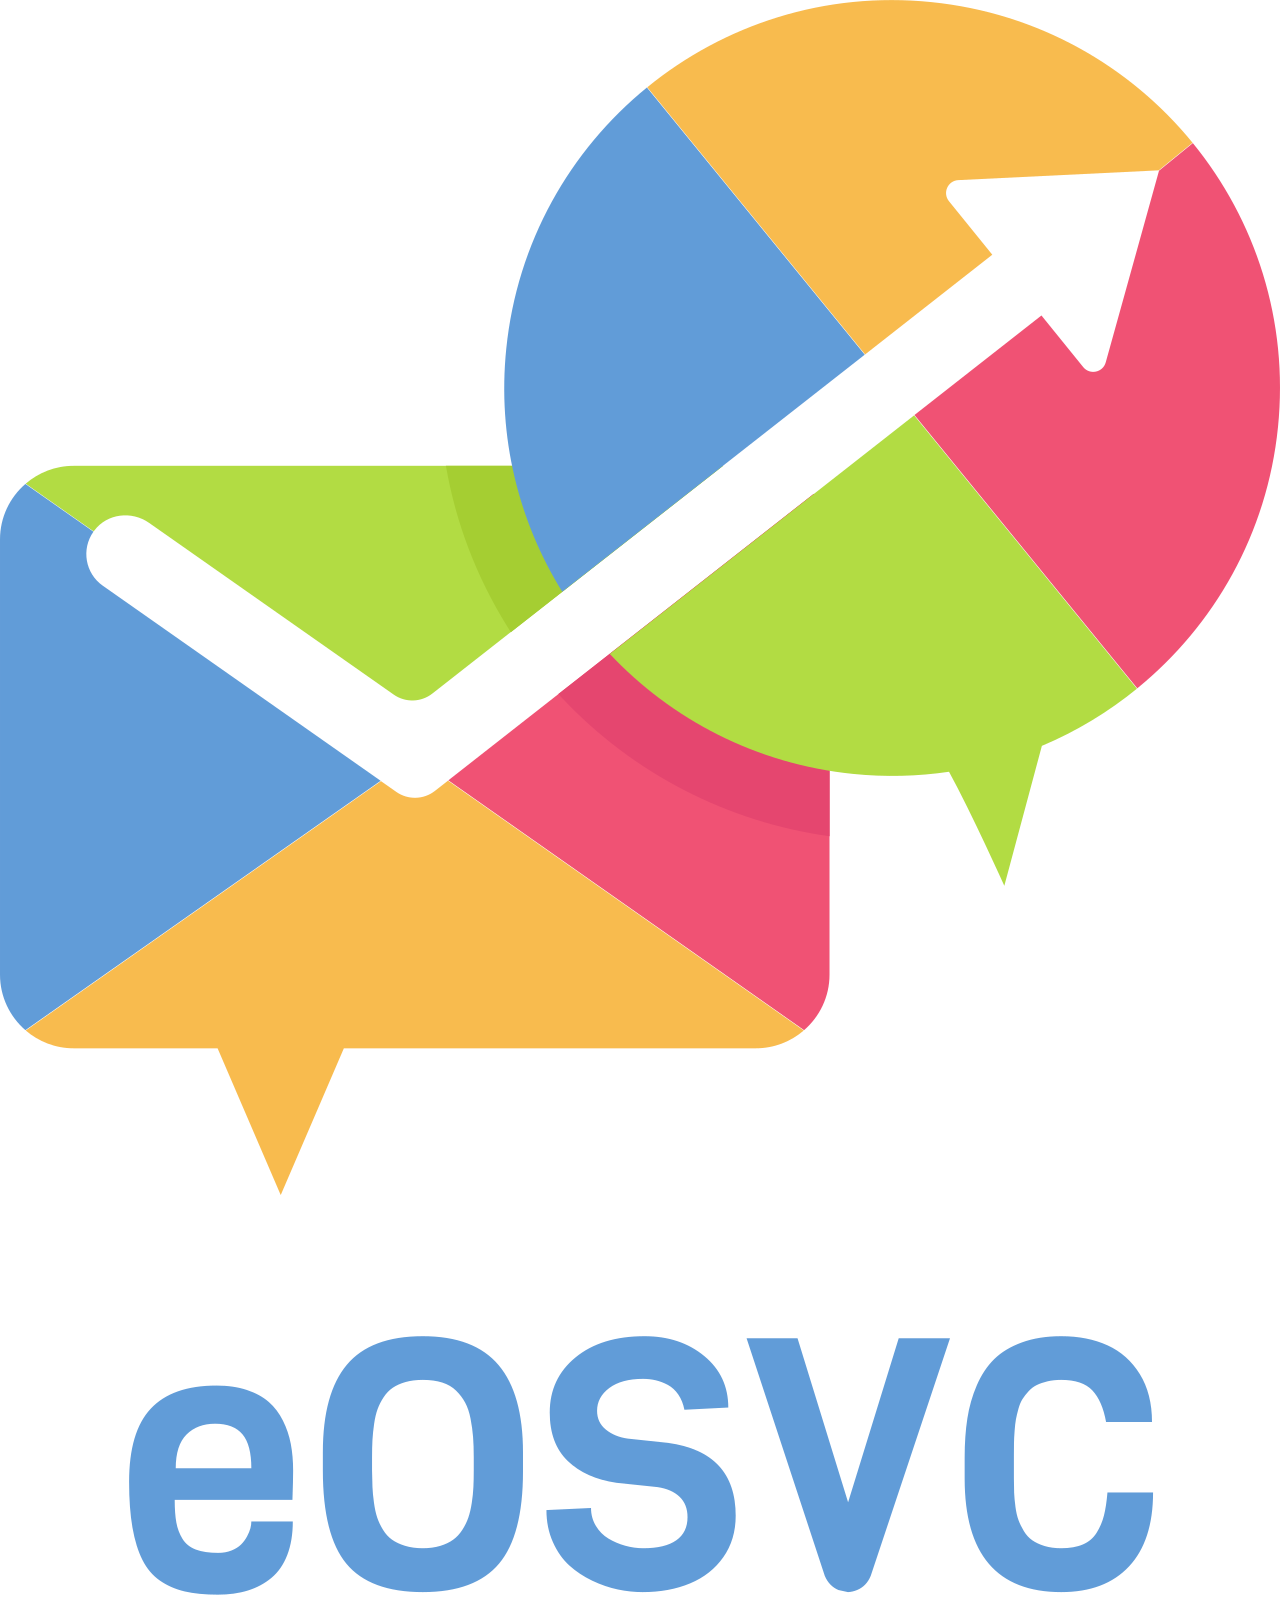 eOSVC's web page